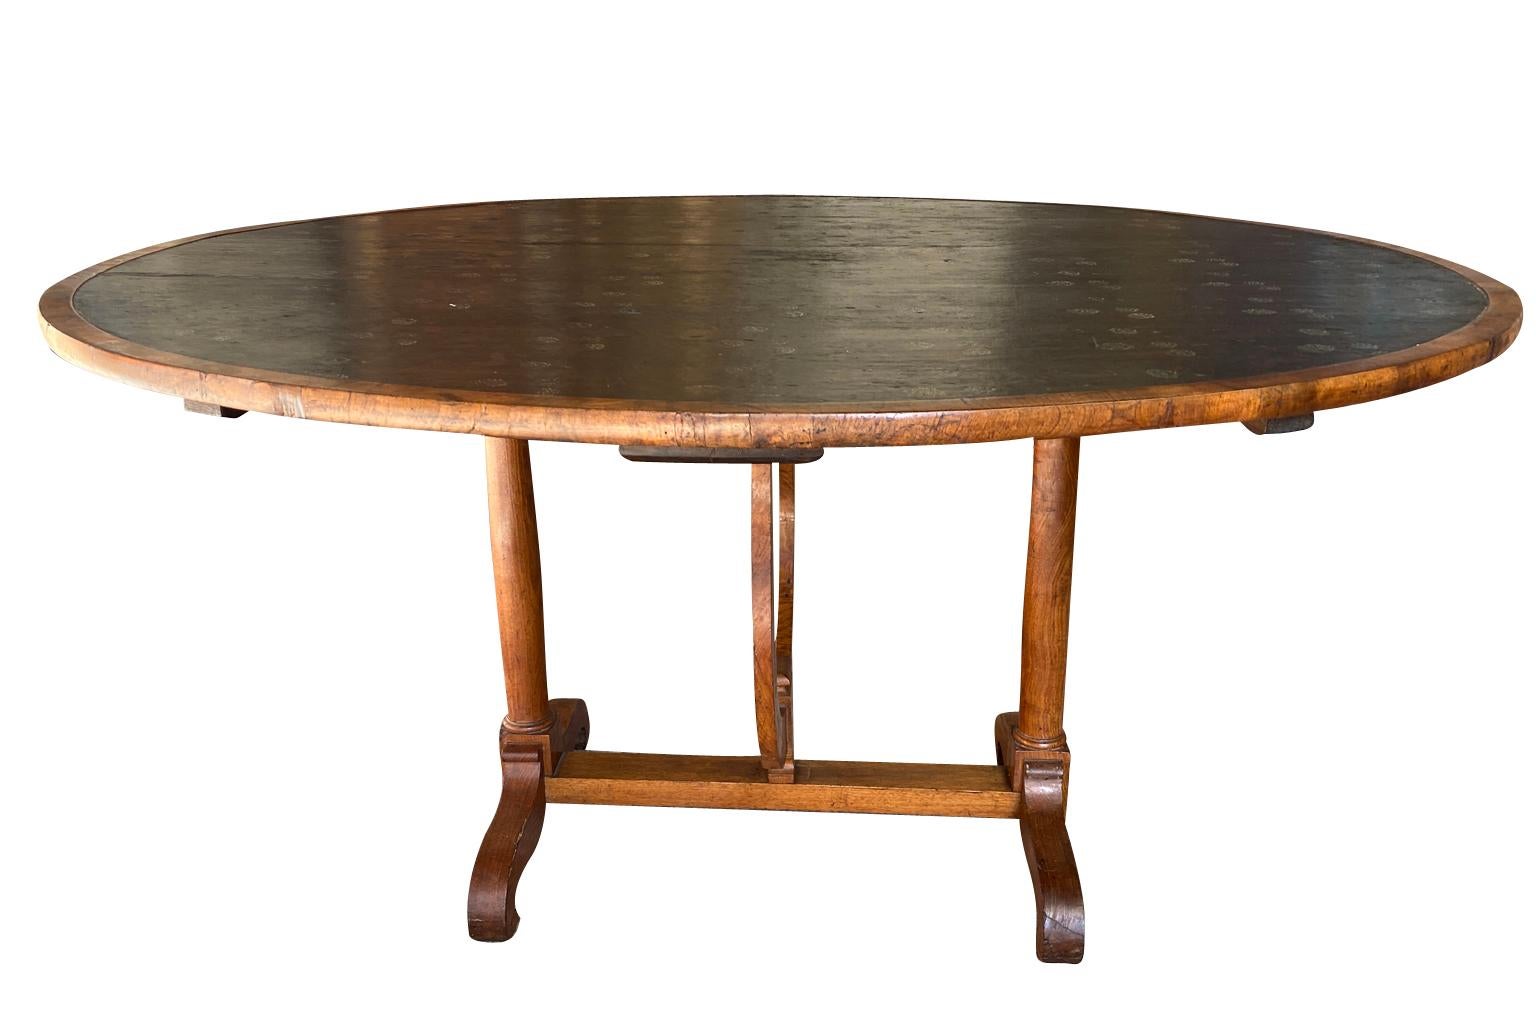 Ein sehr schöner ovaler Weinverkostungstisch aus dem frühen 19. Jahrhundert - Table Vigneron aus der französischen Provence.  Wunderschön aus Nussbaumholz gefertigt, mit einer Moleskinplatte und einem wunderbaren drehbaren Sockel.  Tolle Patina.